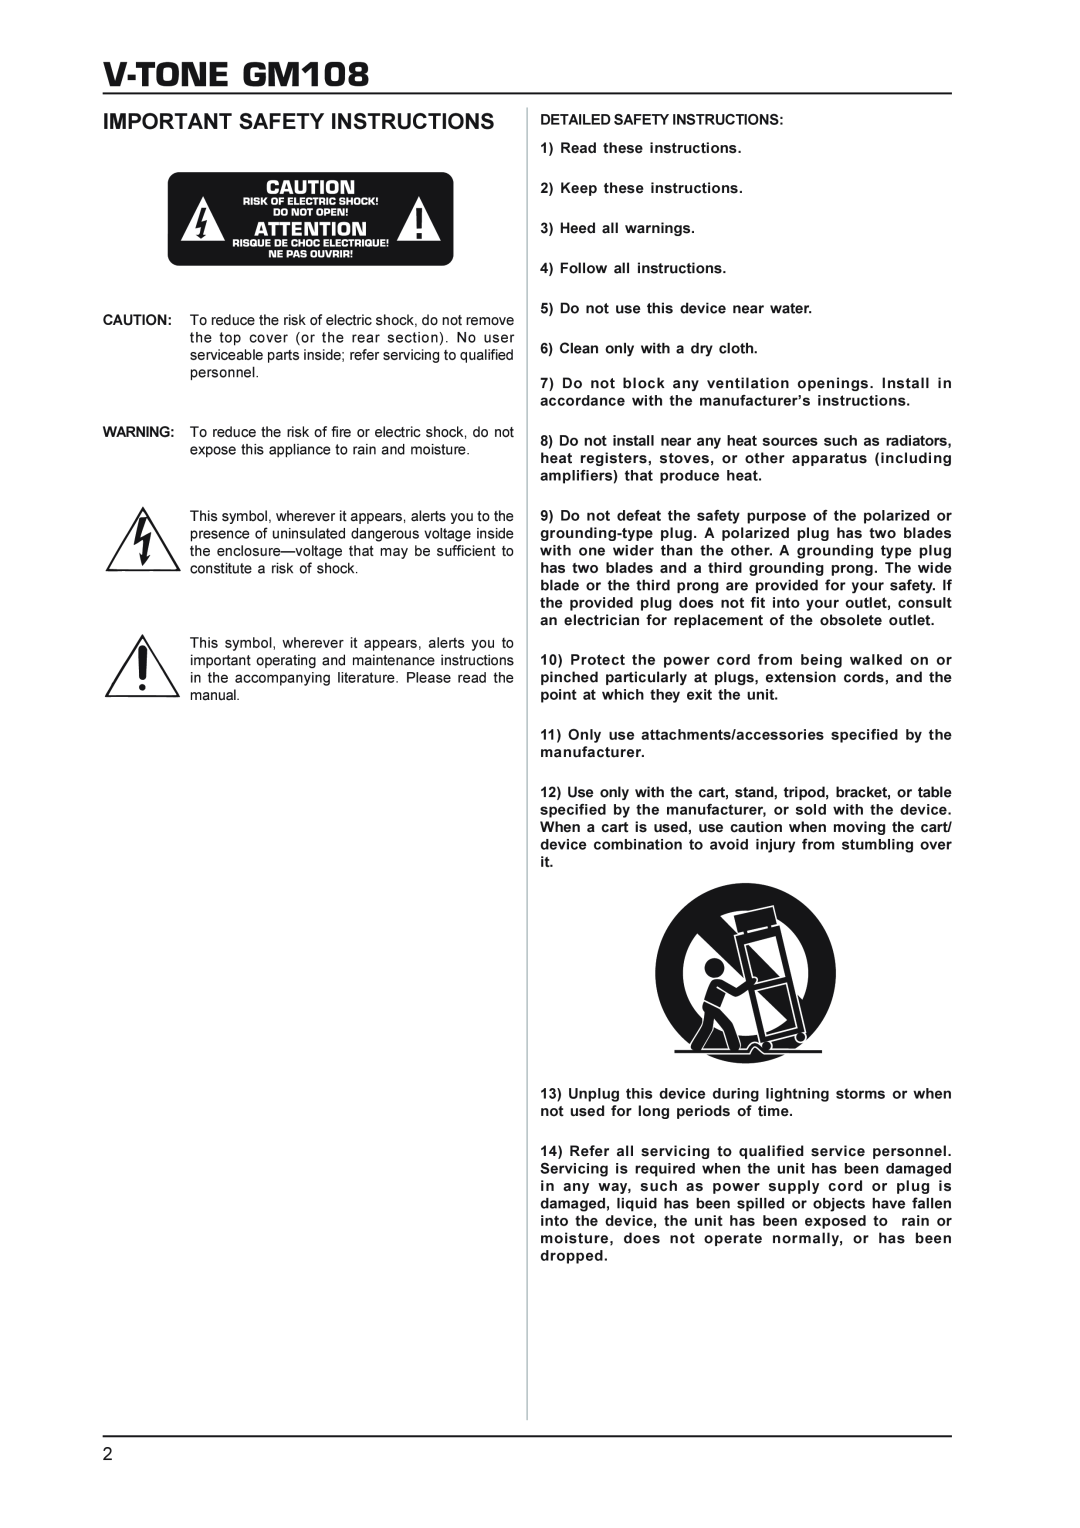 Behringer gm108 manual V-TONEGM108, Important Safety Instructions 